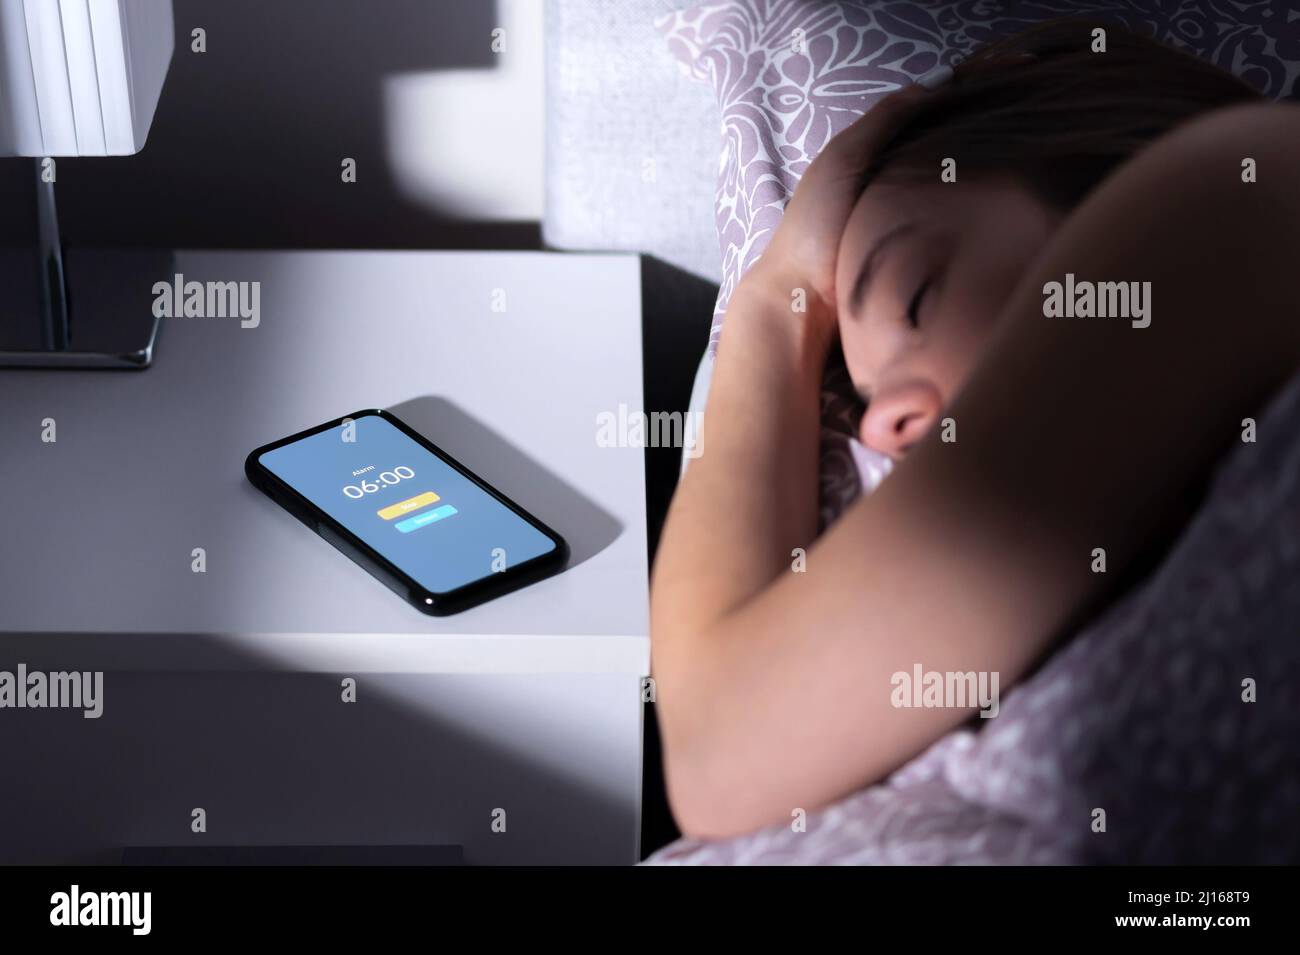 Alarme téléphonique réveillant la femme dormant fatiguée au lit la nuit ou le matin. Téléphone portable sur table avec minuteur et bouton de répétition. Personne dormant. Banque D'Images